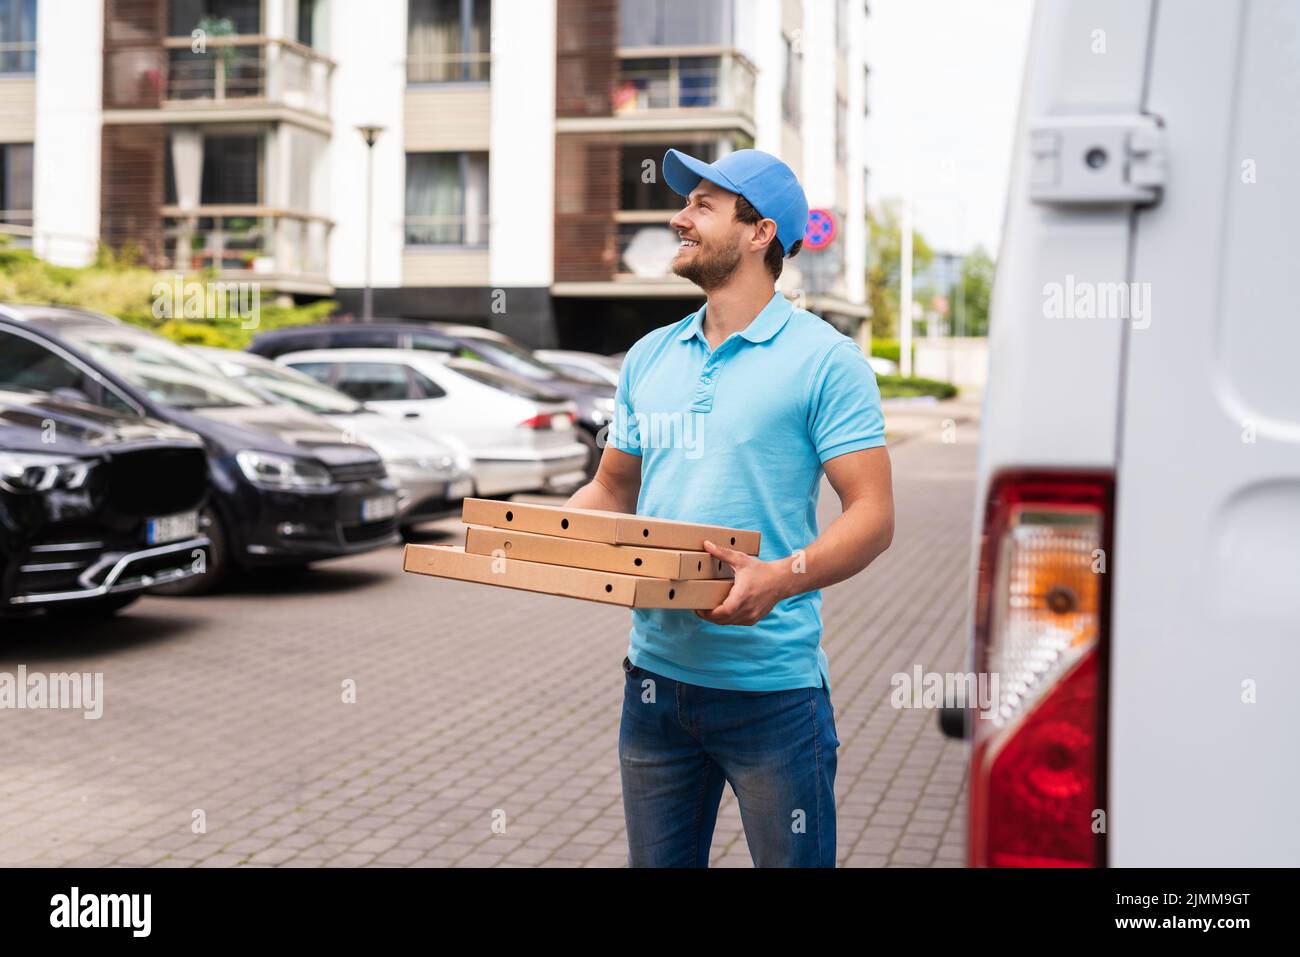 Livraison de pizza par coursier en attente d'un client Banque D'Images